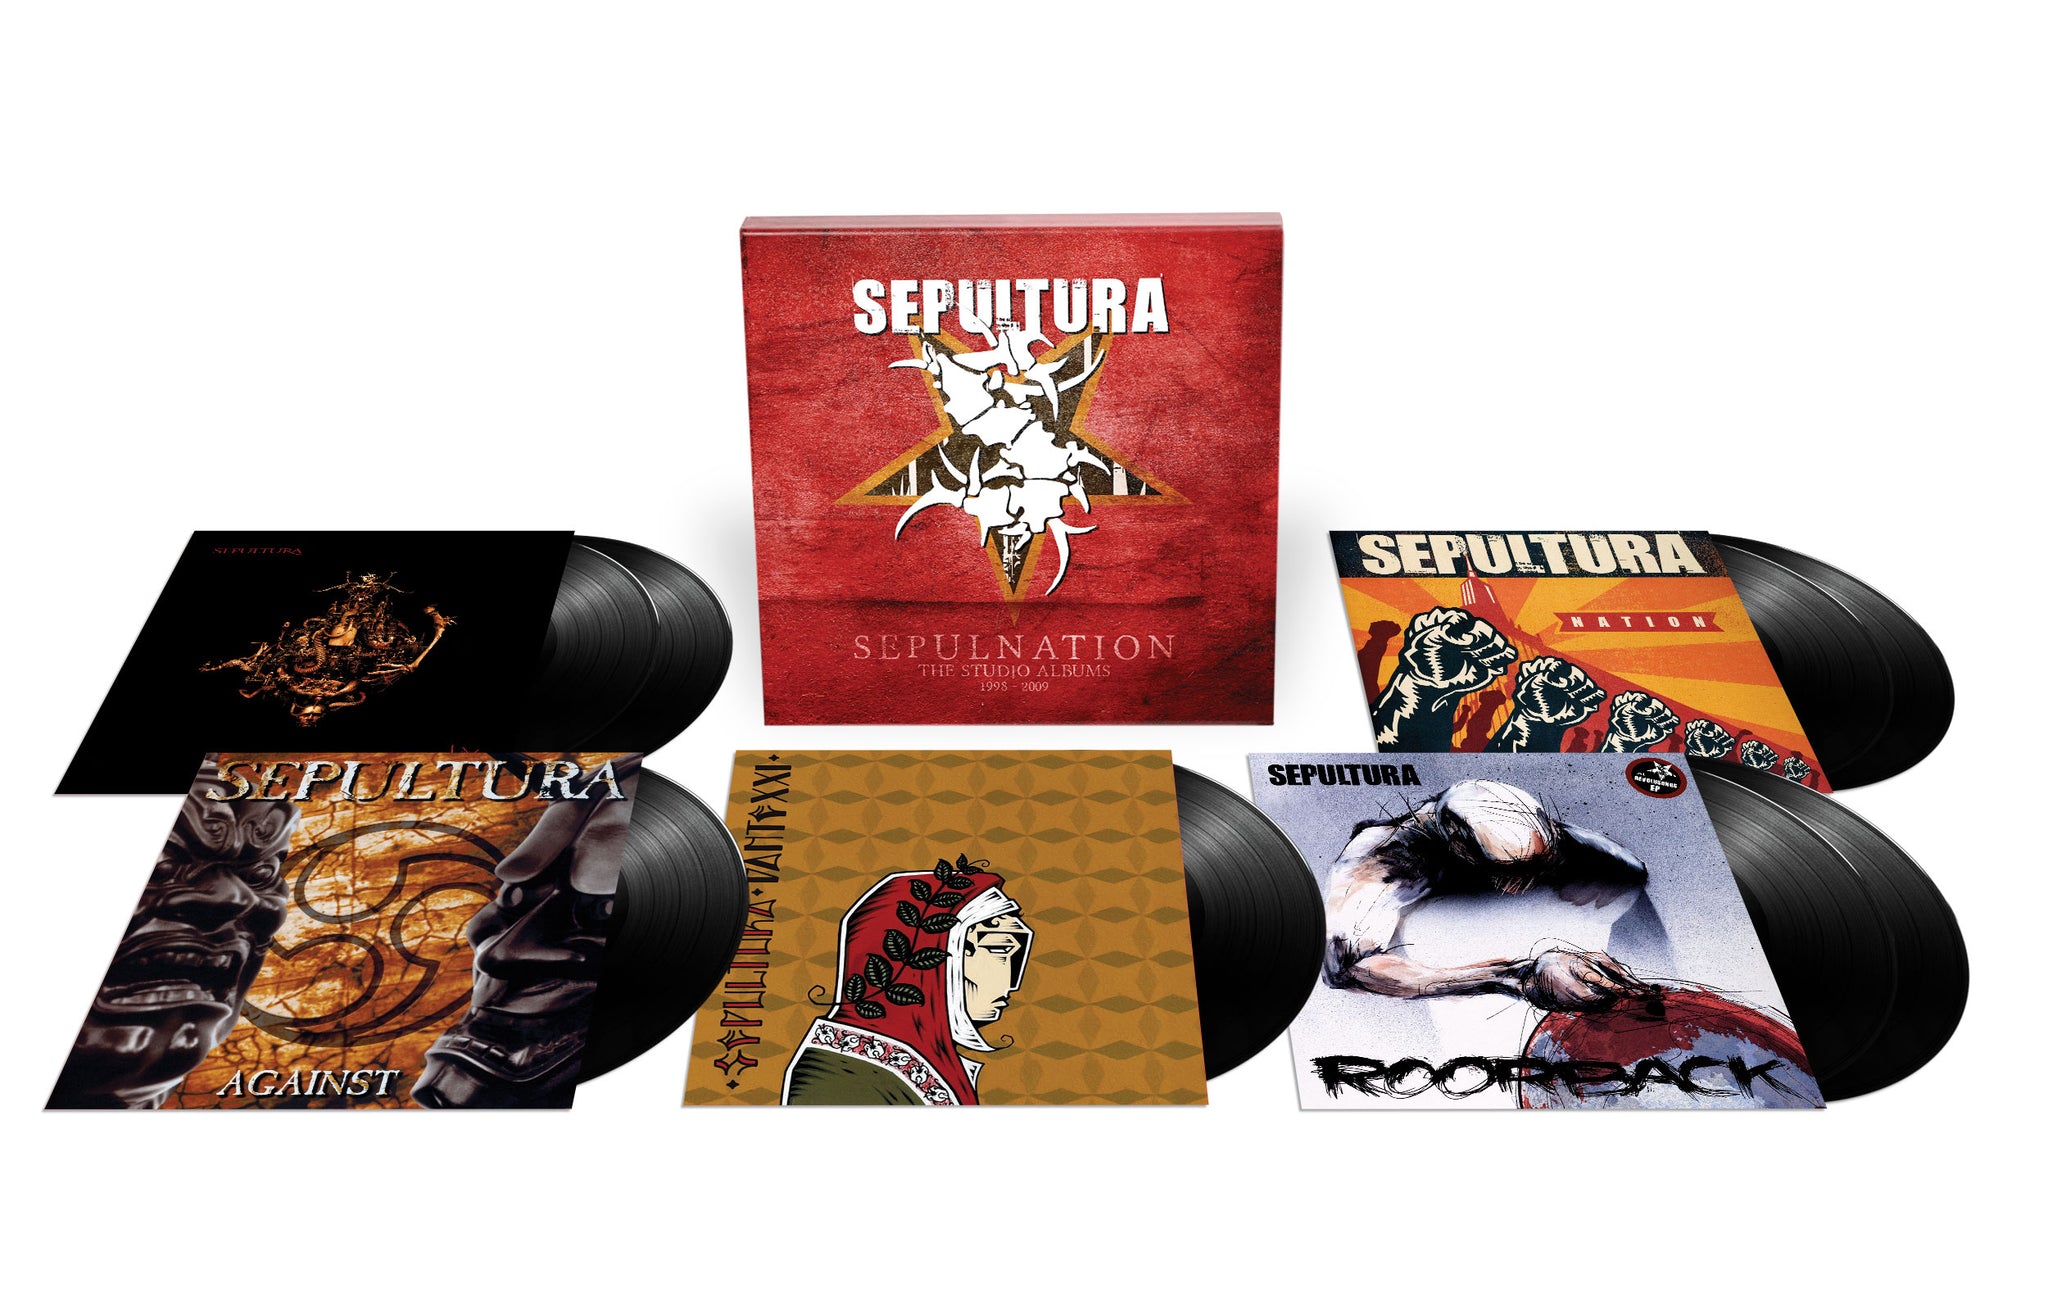 Sepultura "Sepulnation - The Studio Albums 1998-2009" 8LP Vinyl Box Set